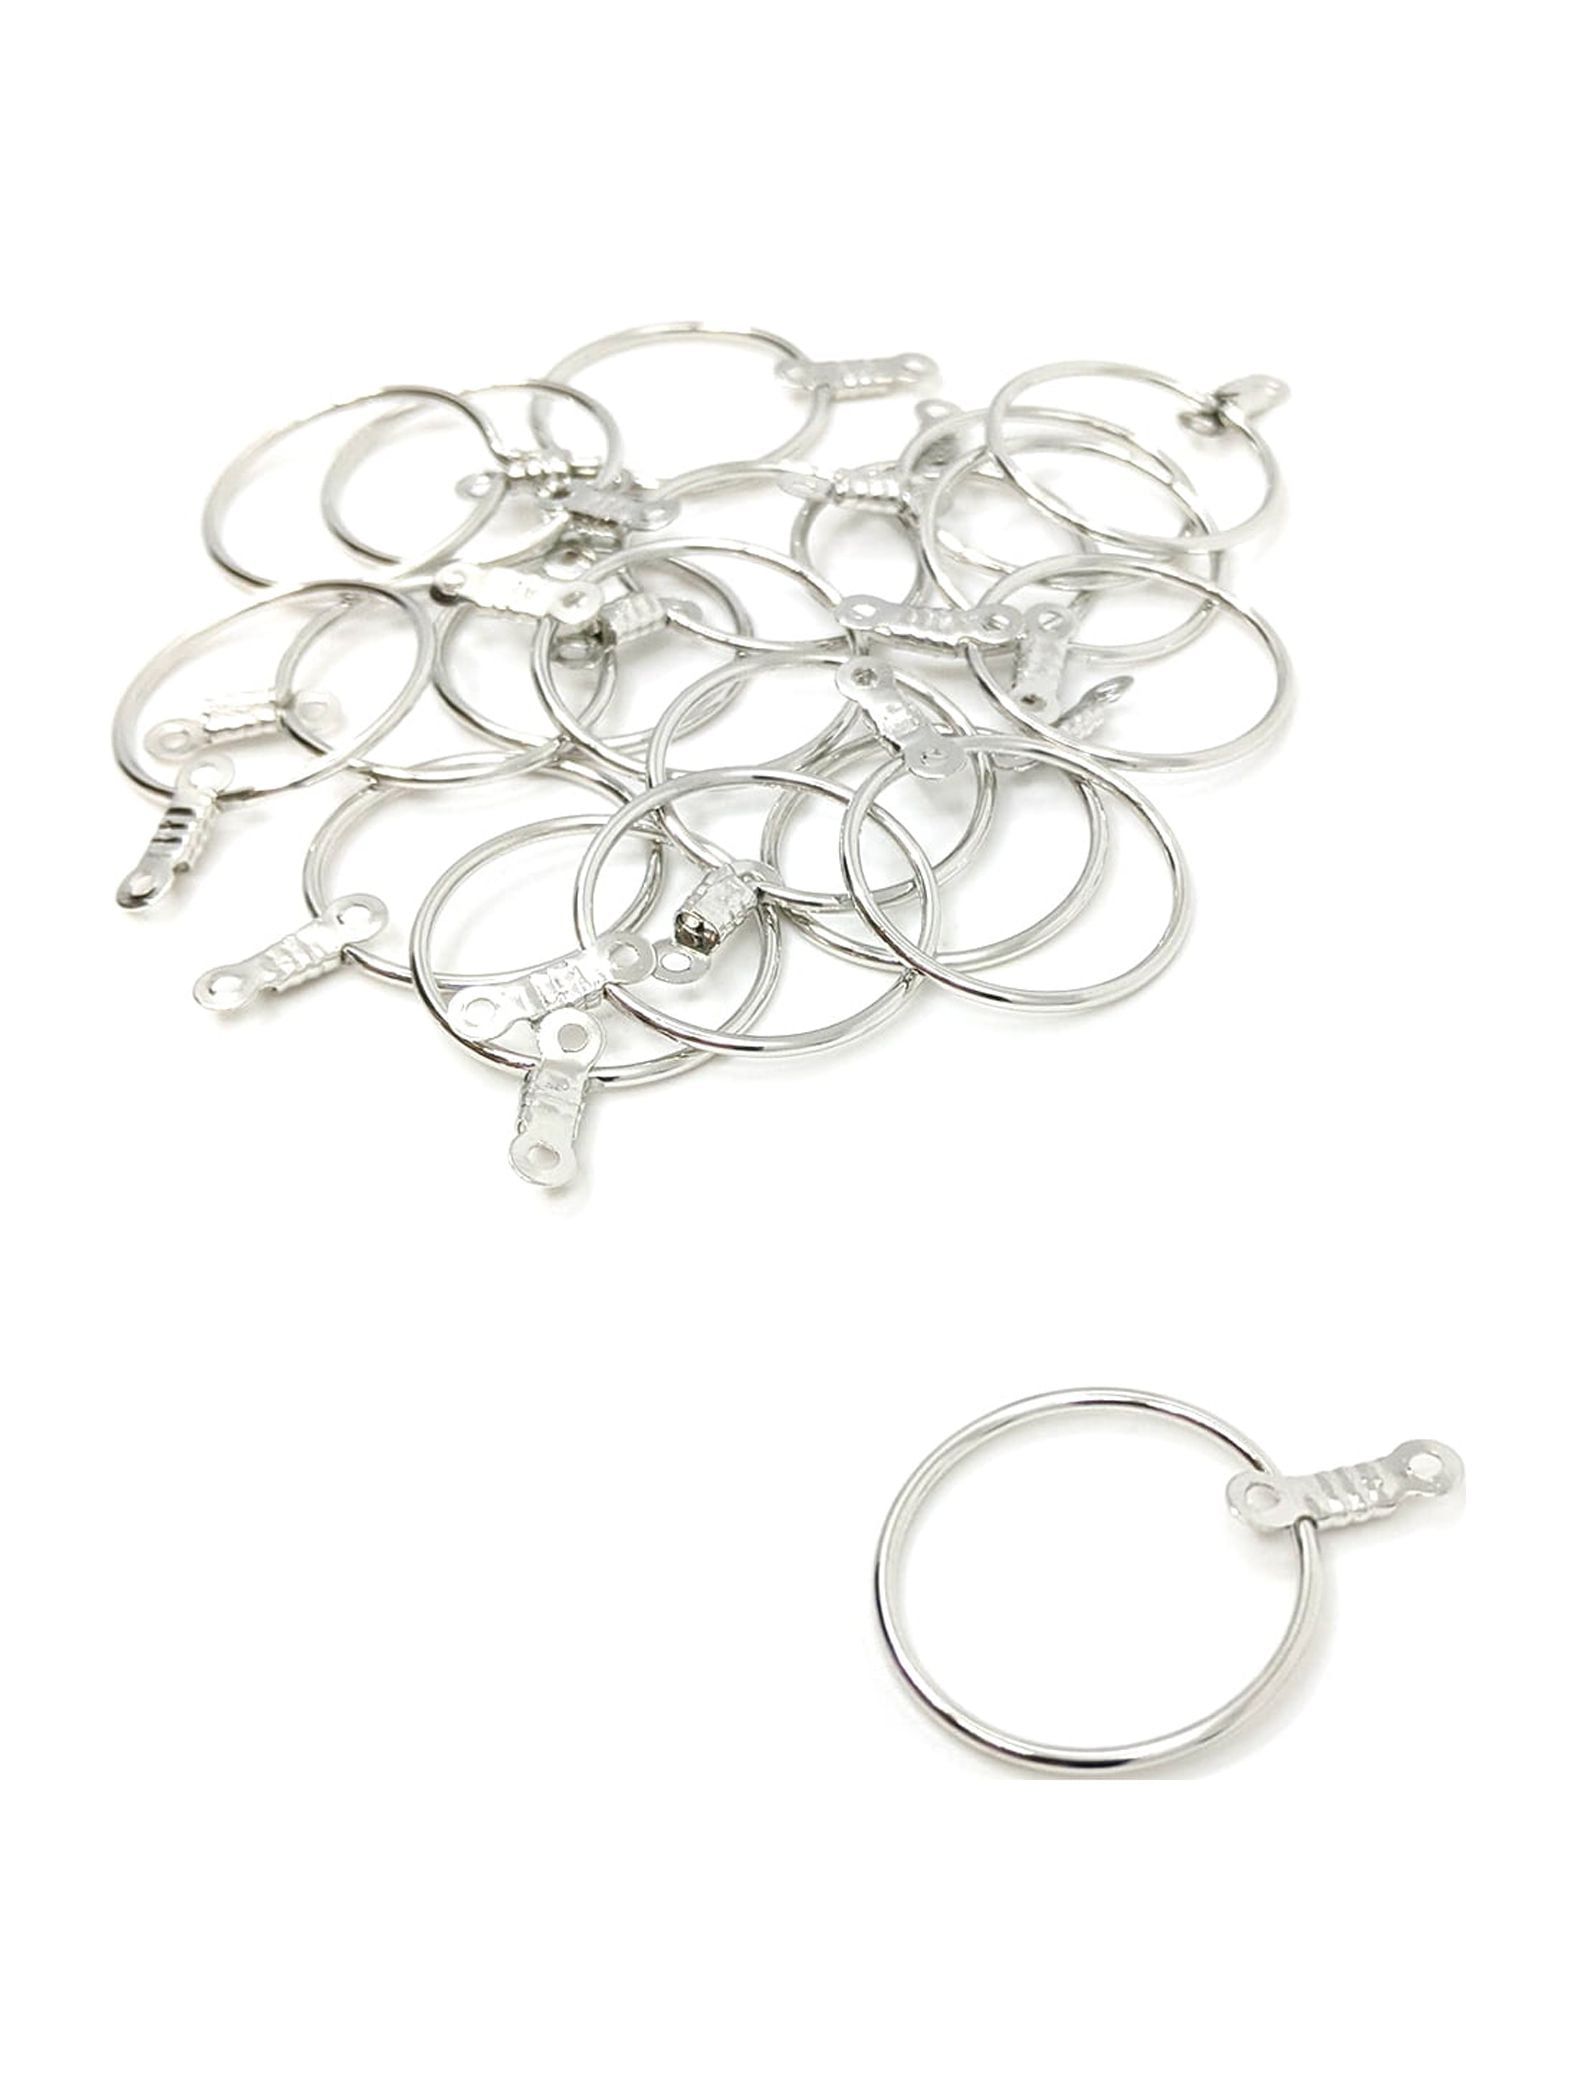 Bead Landing Hoop Earrings - Silver - Each